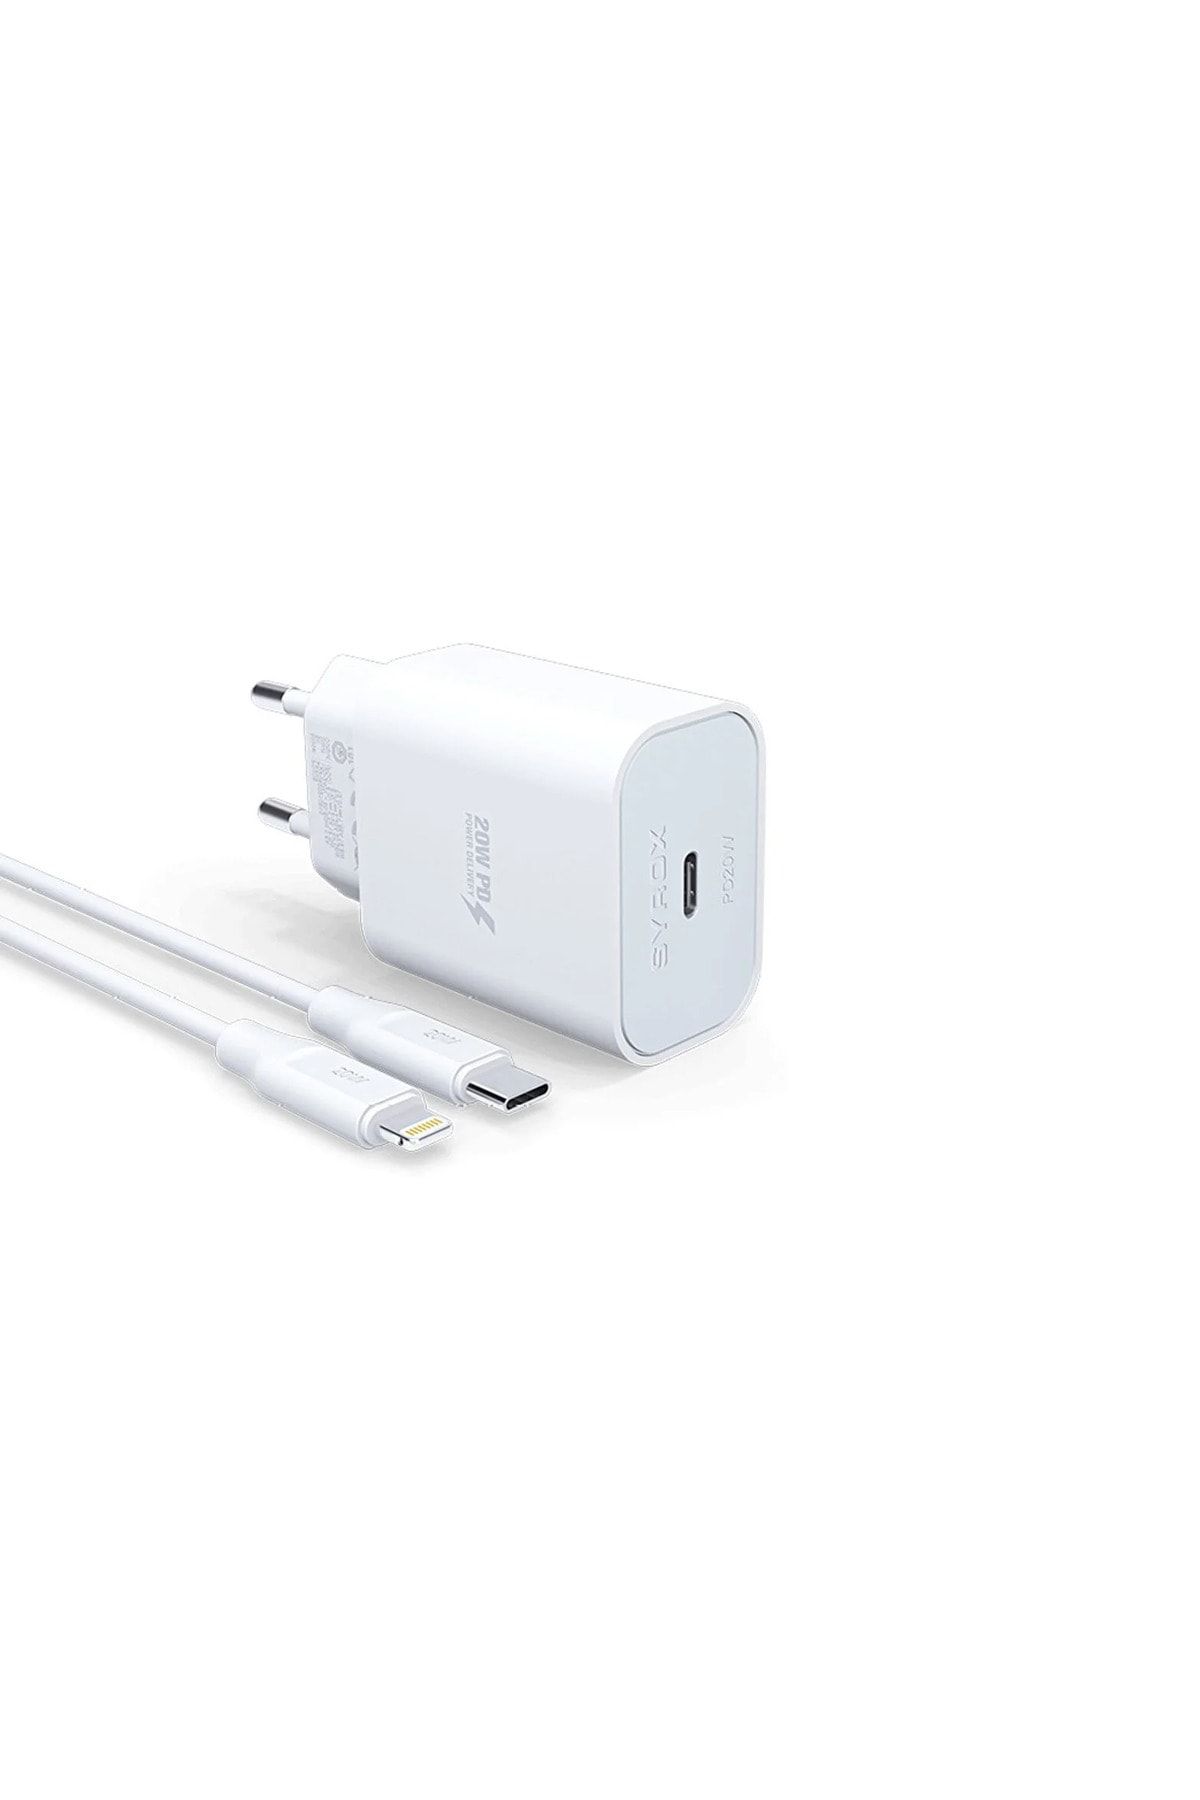 Syrox Apple Iphone 12 Pro Max 5g Uyumlu Hızlı Şarj Cihazı Lightning 20w Şarj Aleti Seti